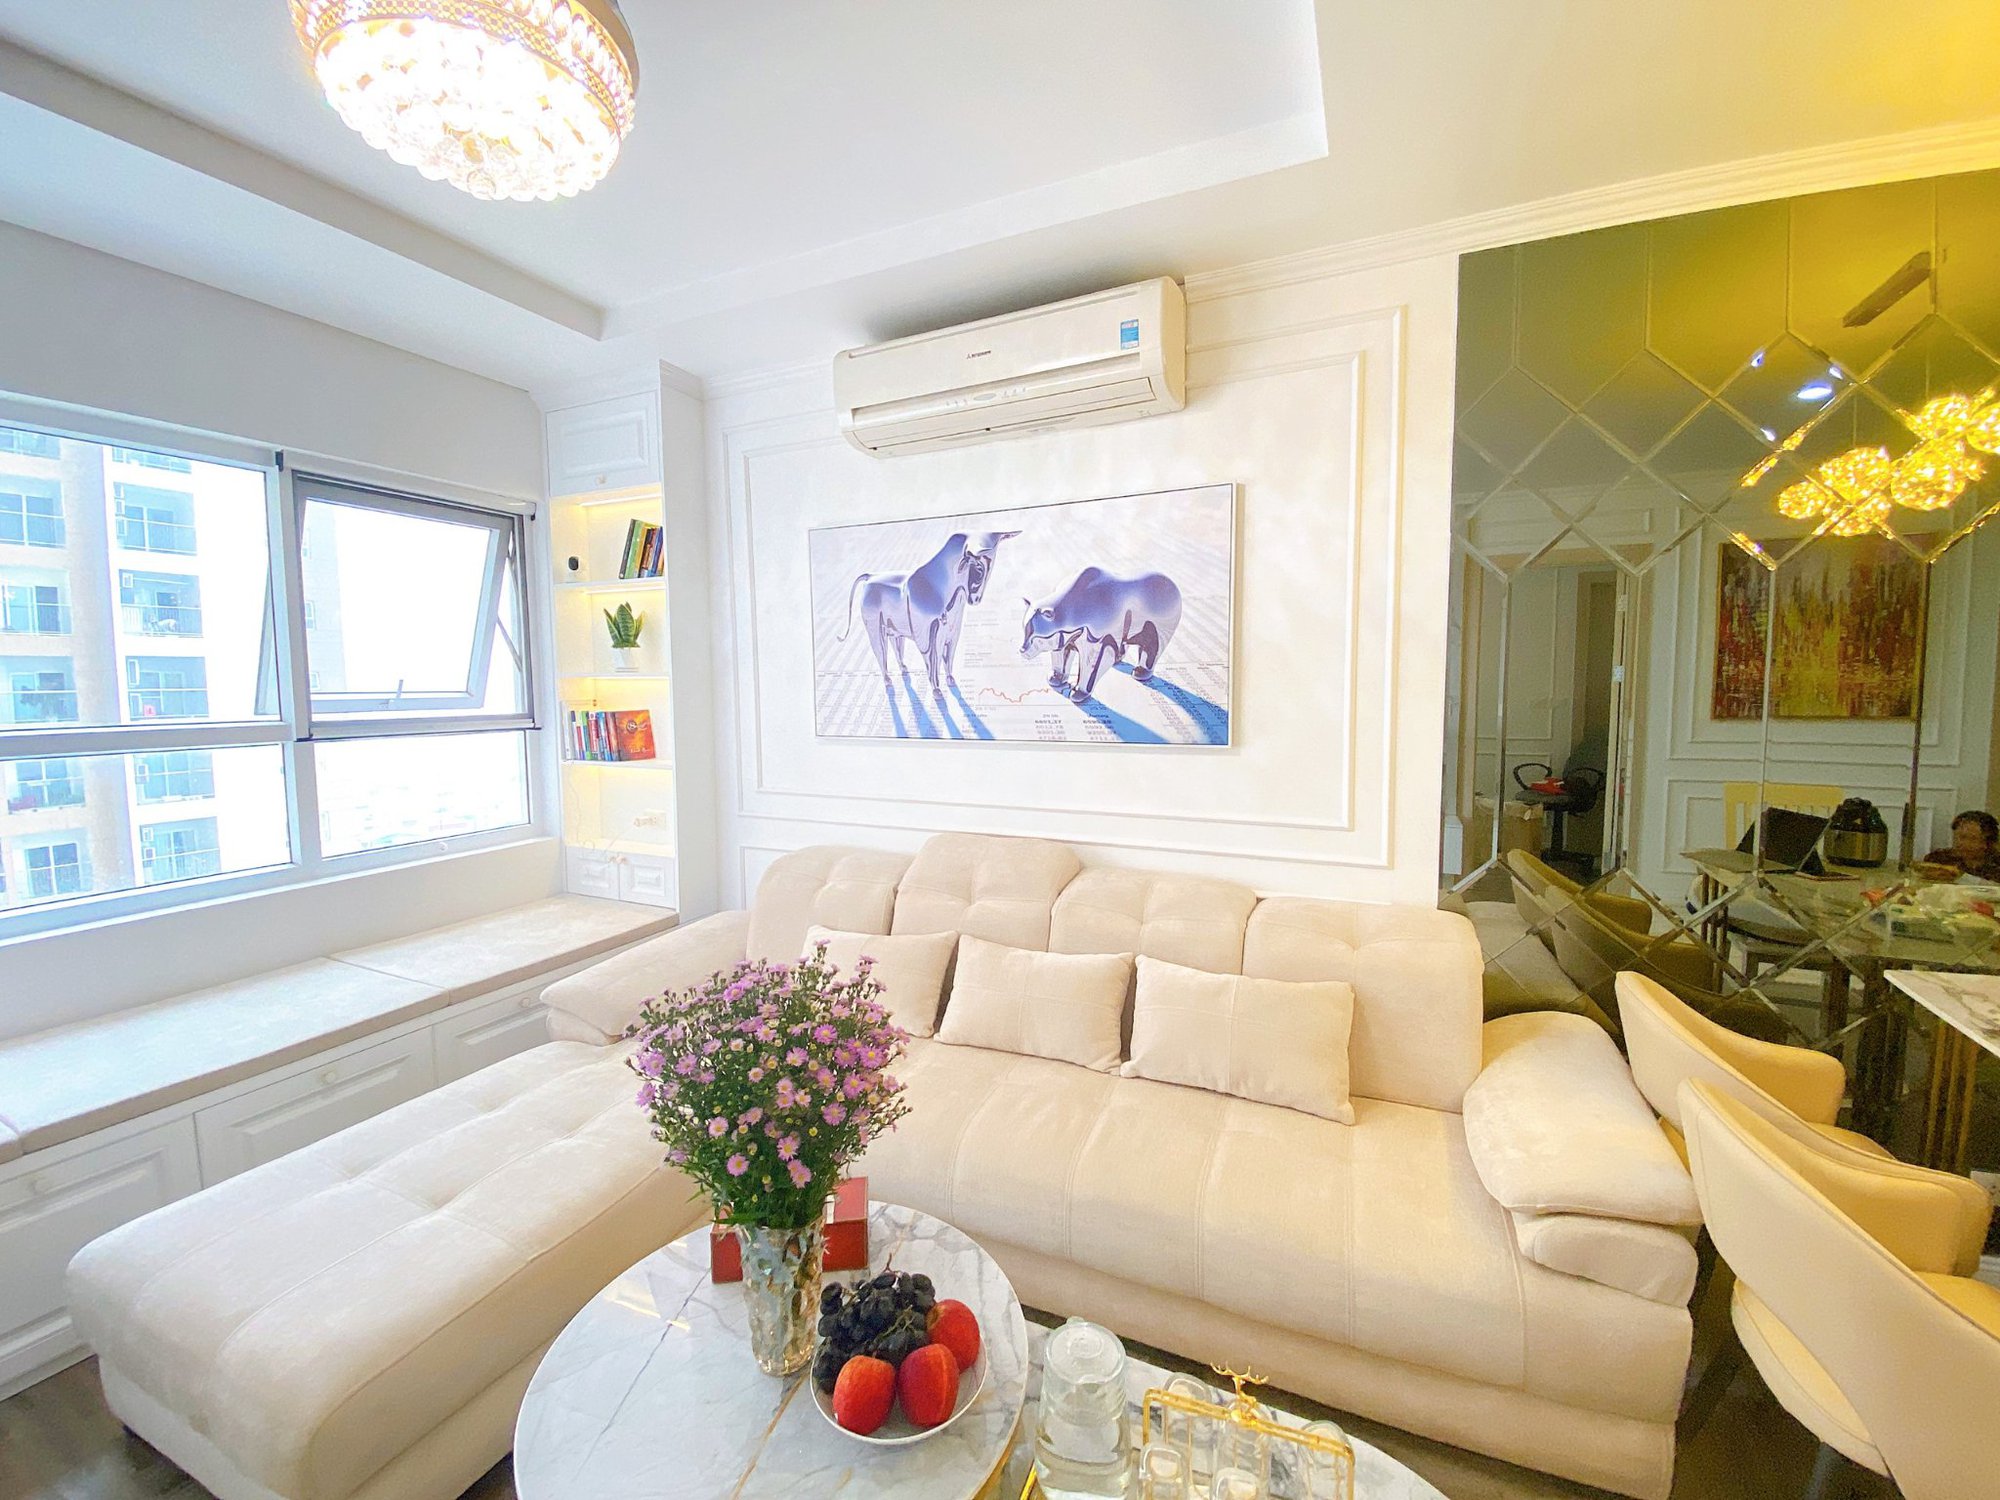 Cặp vợ chồng trẻ Hà Nội thay đổi căn hộ 85m² thành tổ ấm mới rộng thoáng theo gam màu trắng  - Ảnh 3.